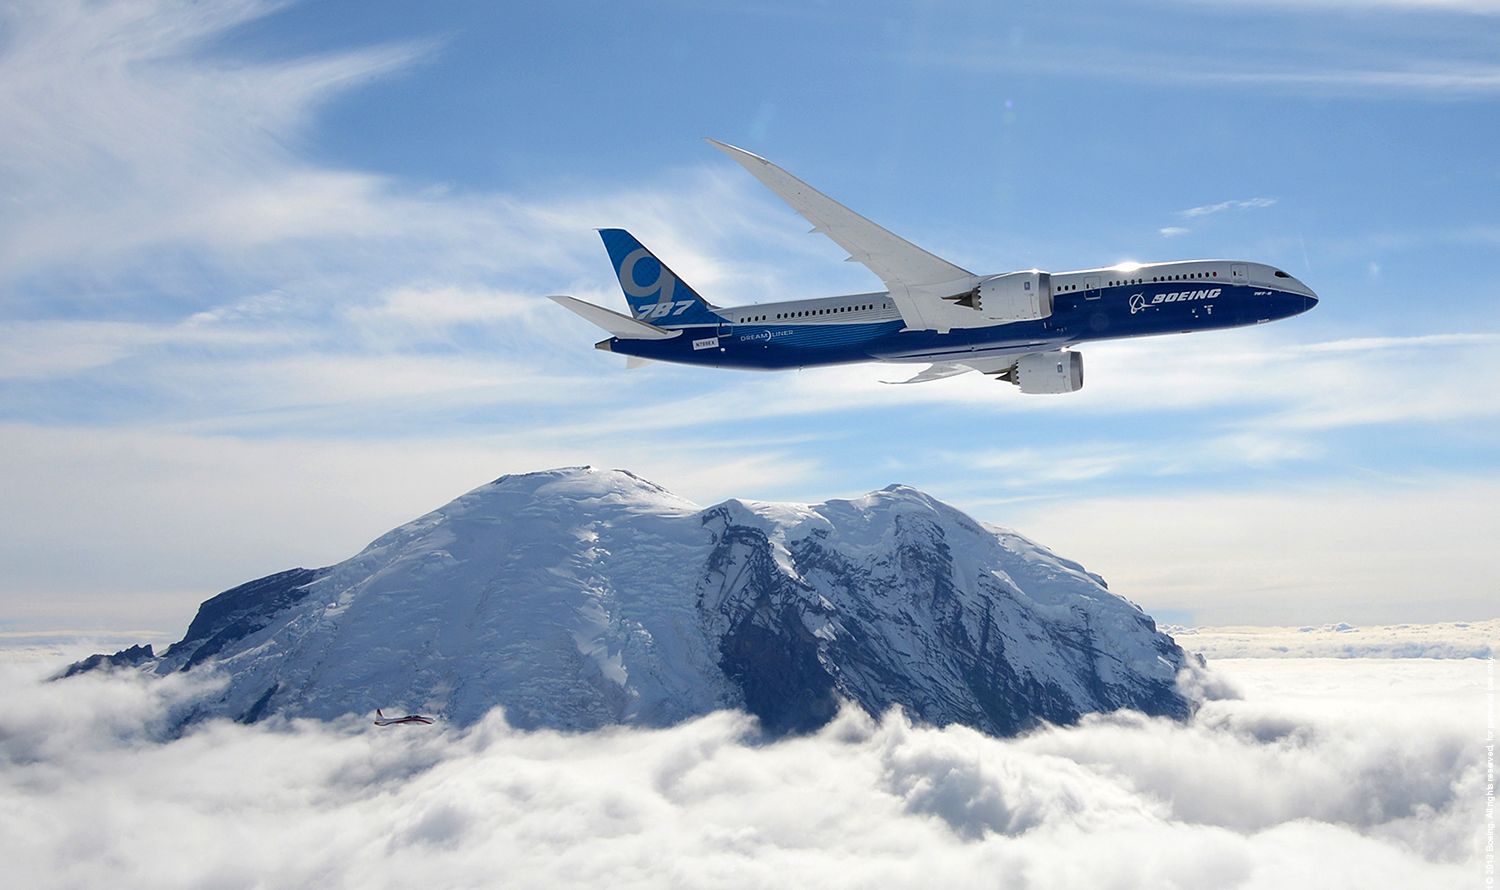 Előzetes hírek szerint a hosszú 787-esek közül az első prototípus jön Angliába